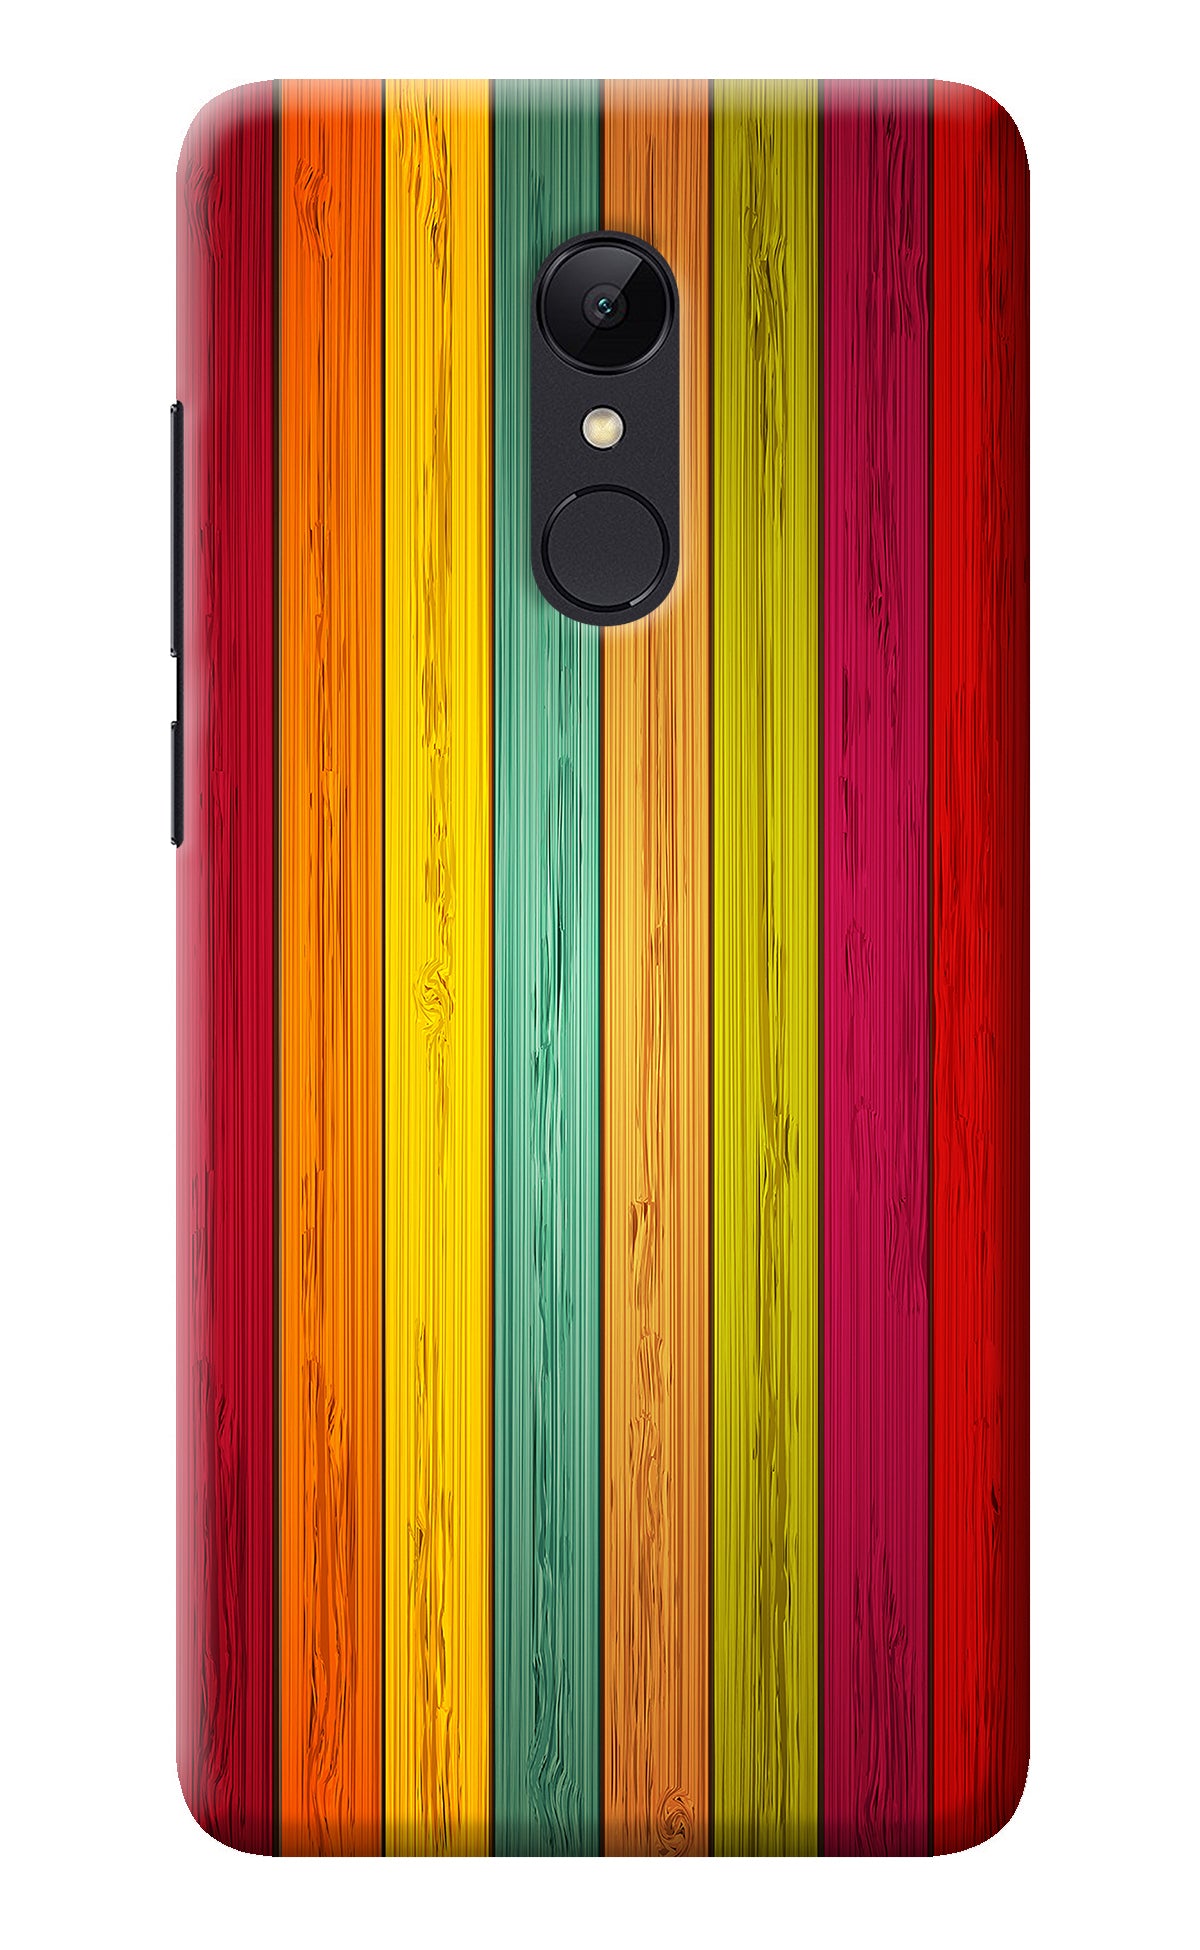 Multicolor Wooden Redmi 5 Back Cover